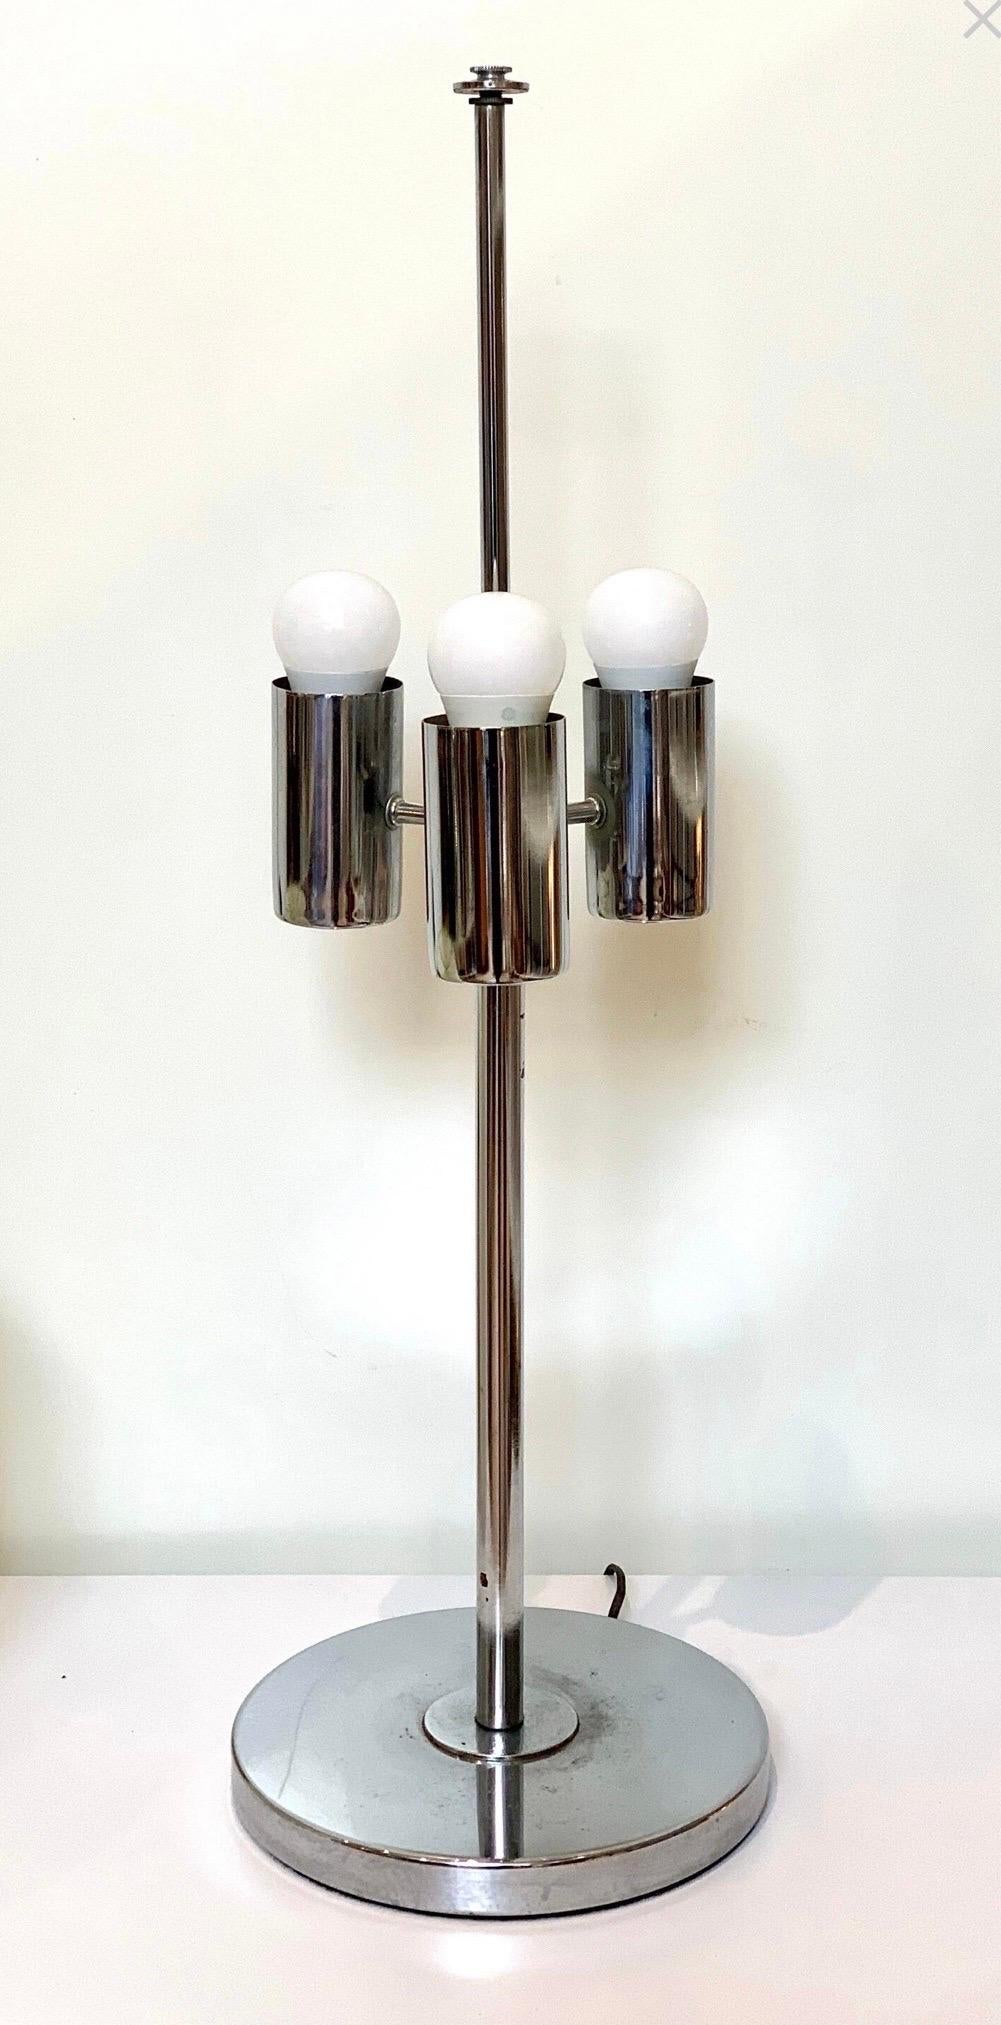 Lampe de table chromée de Robert Sonneman, moderne du milieu du siècle, à trois lumières et abat-jour original. En excellent état, avec une usure typique de l'âge et de l'utilisation.

La lampe mesure 10